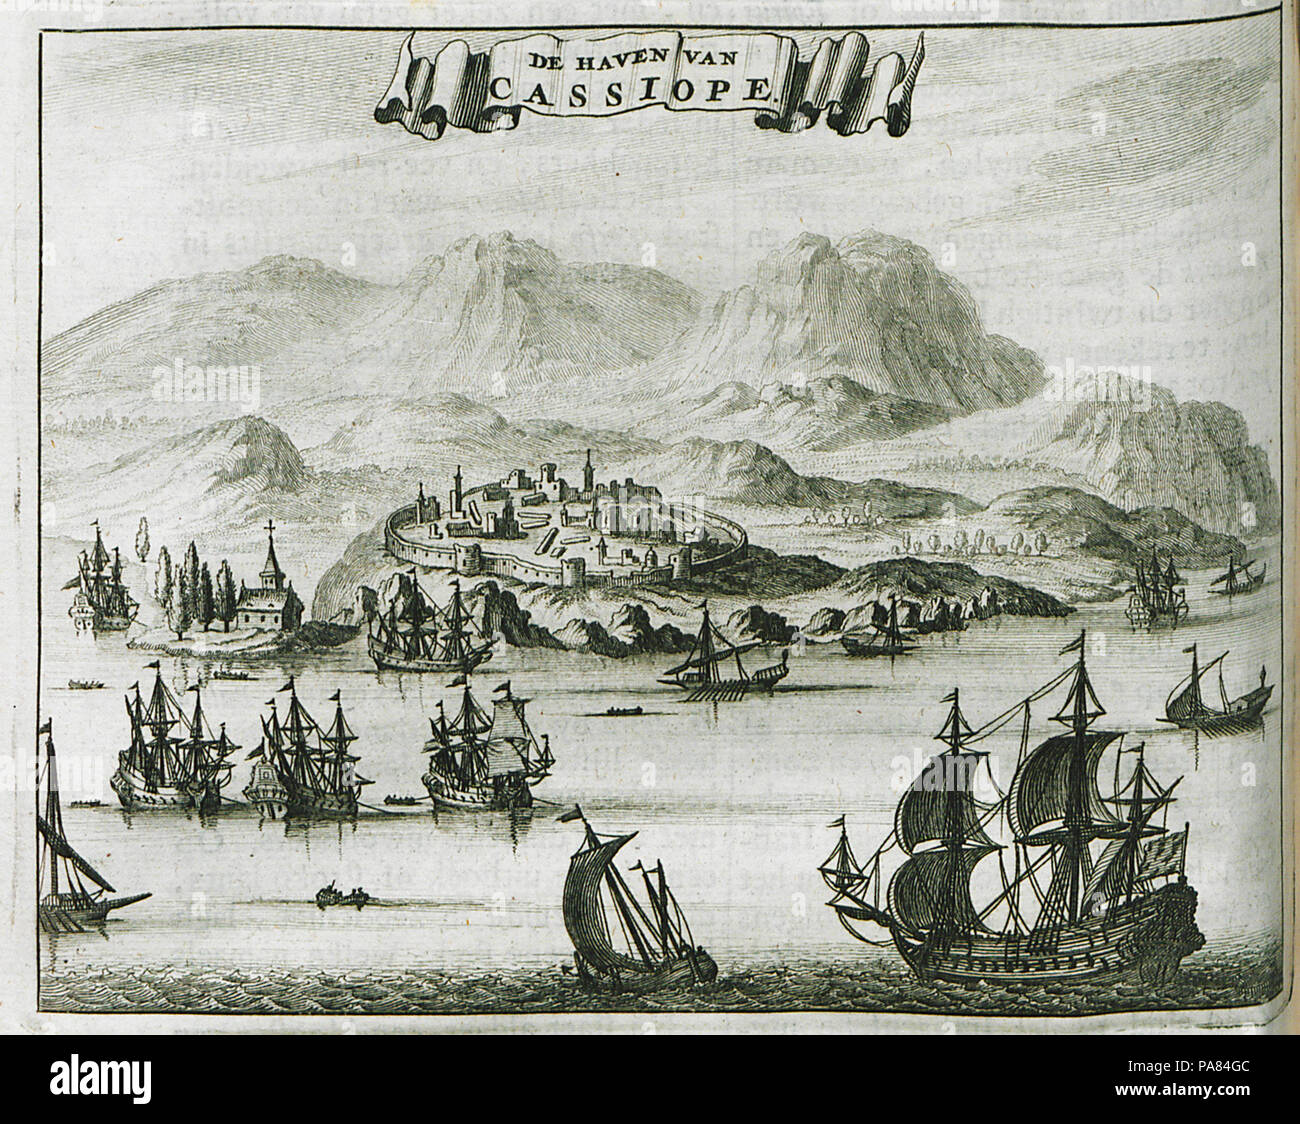 60 De Haven van Cassiope - Dapper Olfert - 1688 Stock Photo